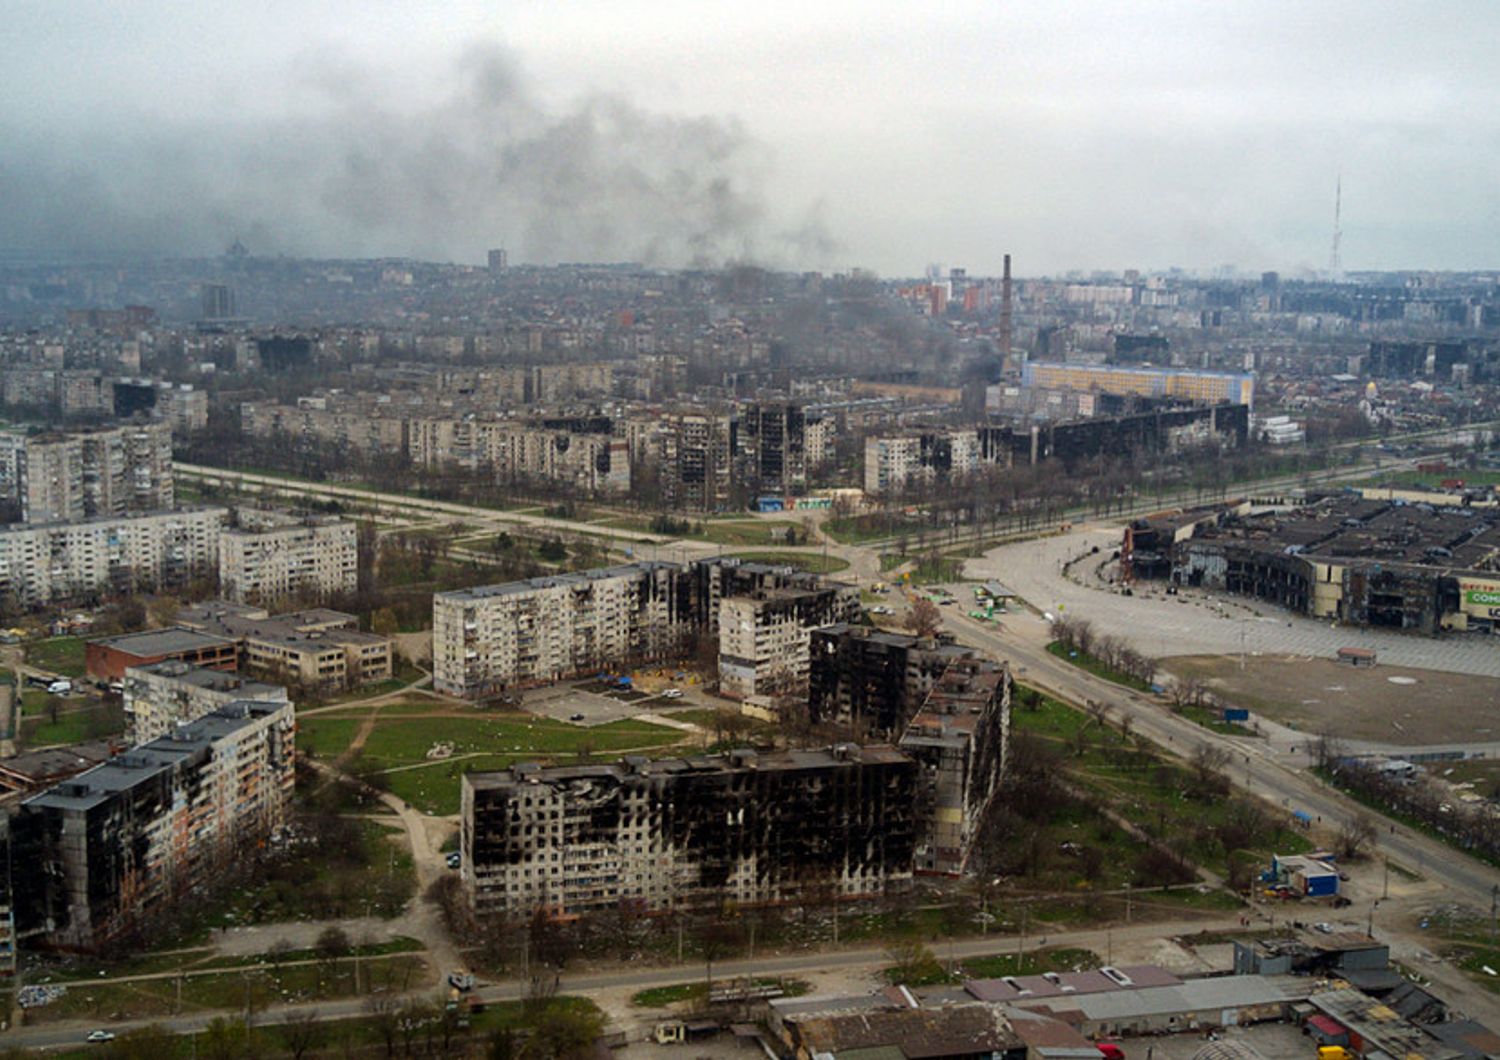 La citt&agrave; di Mariupol, bombardata dai russi